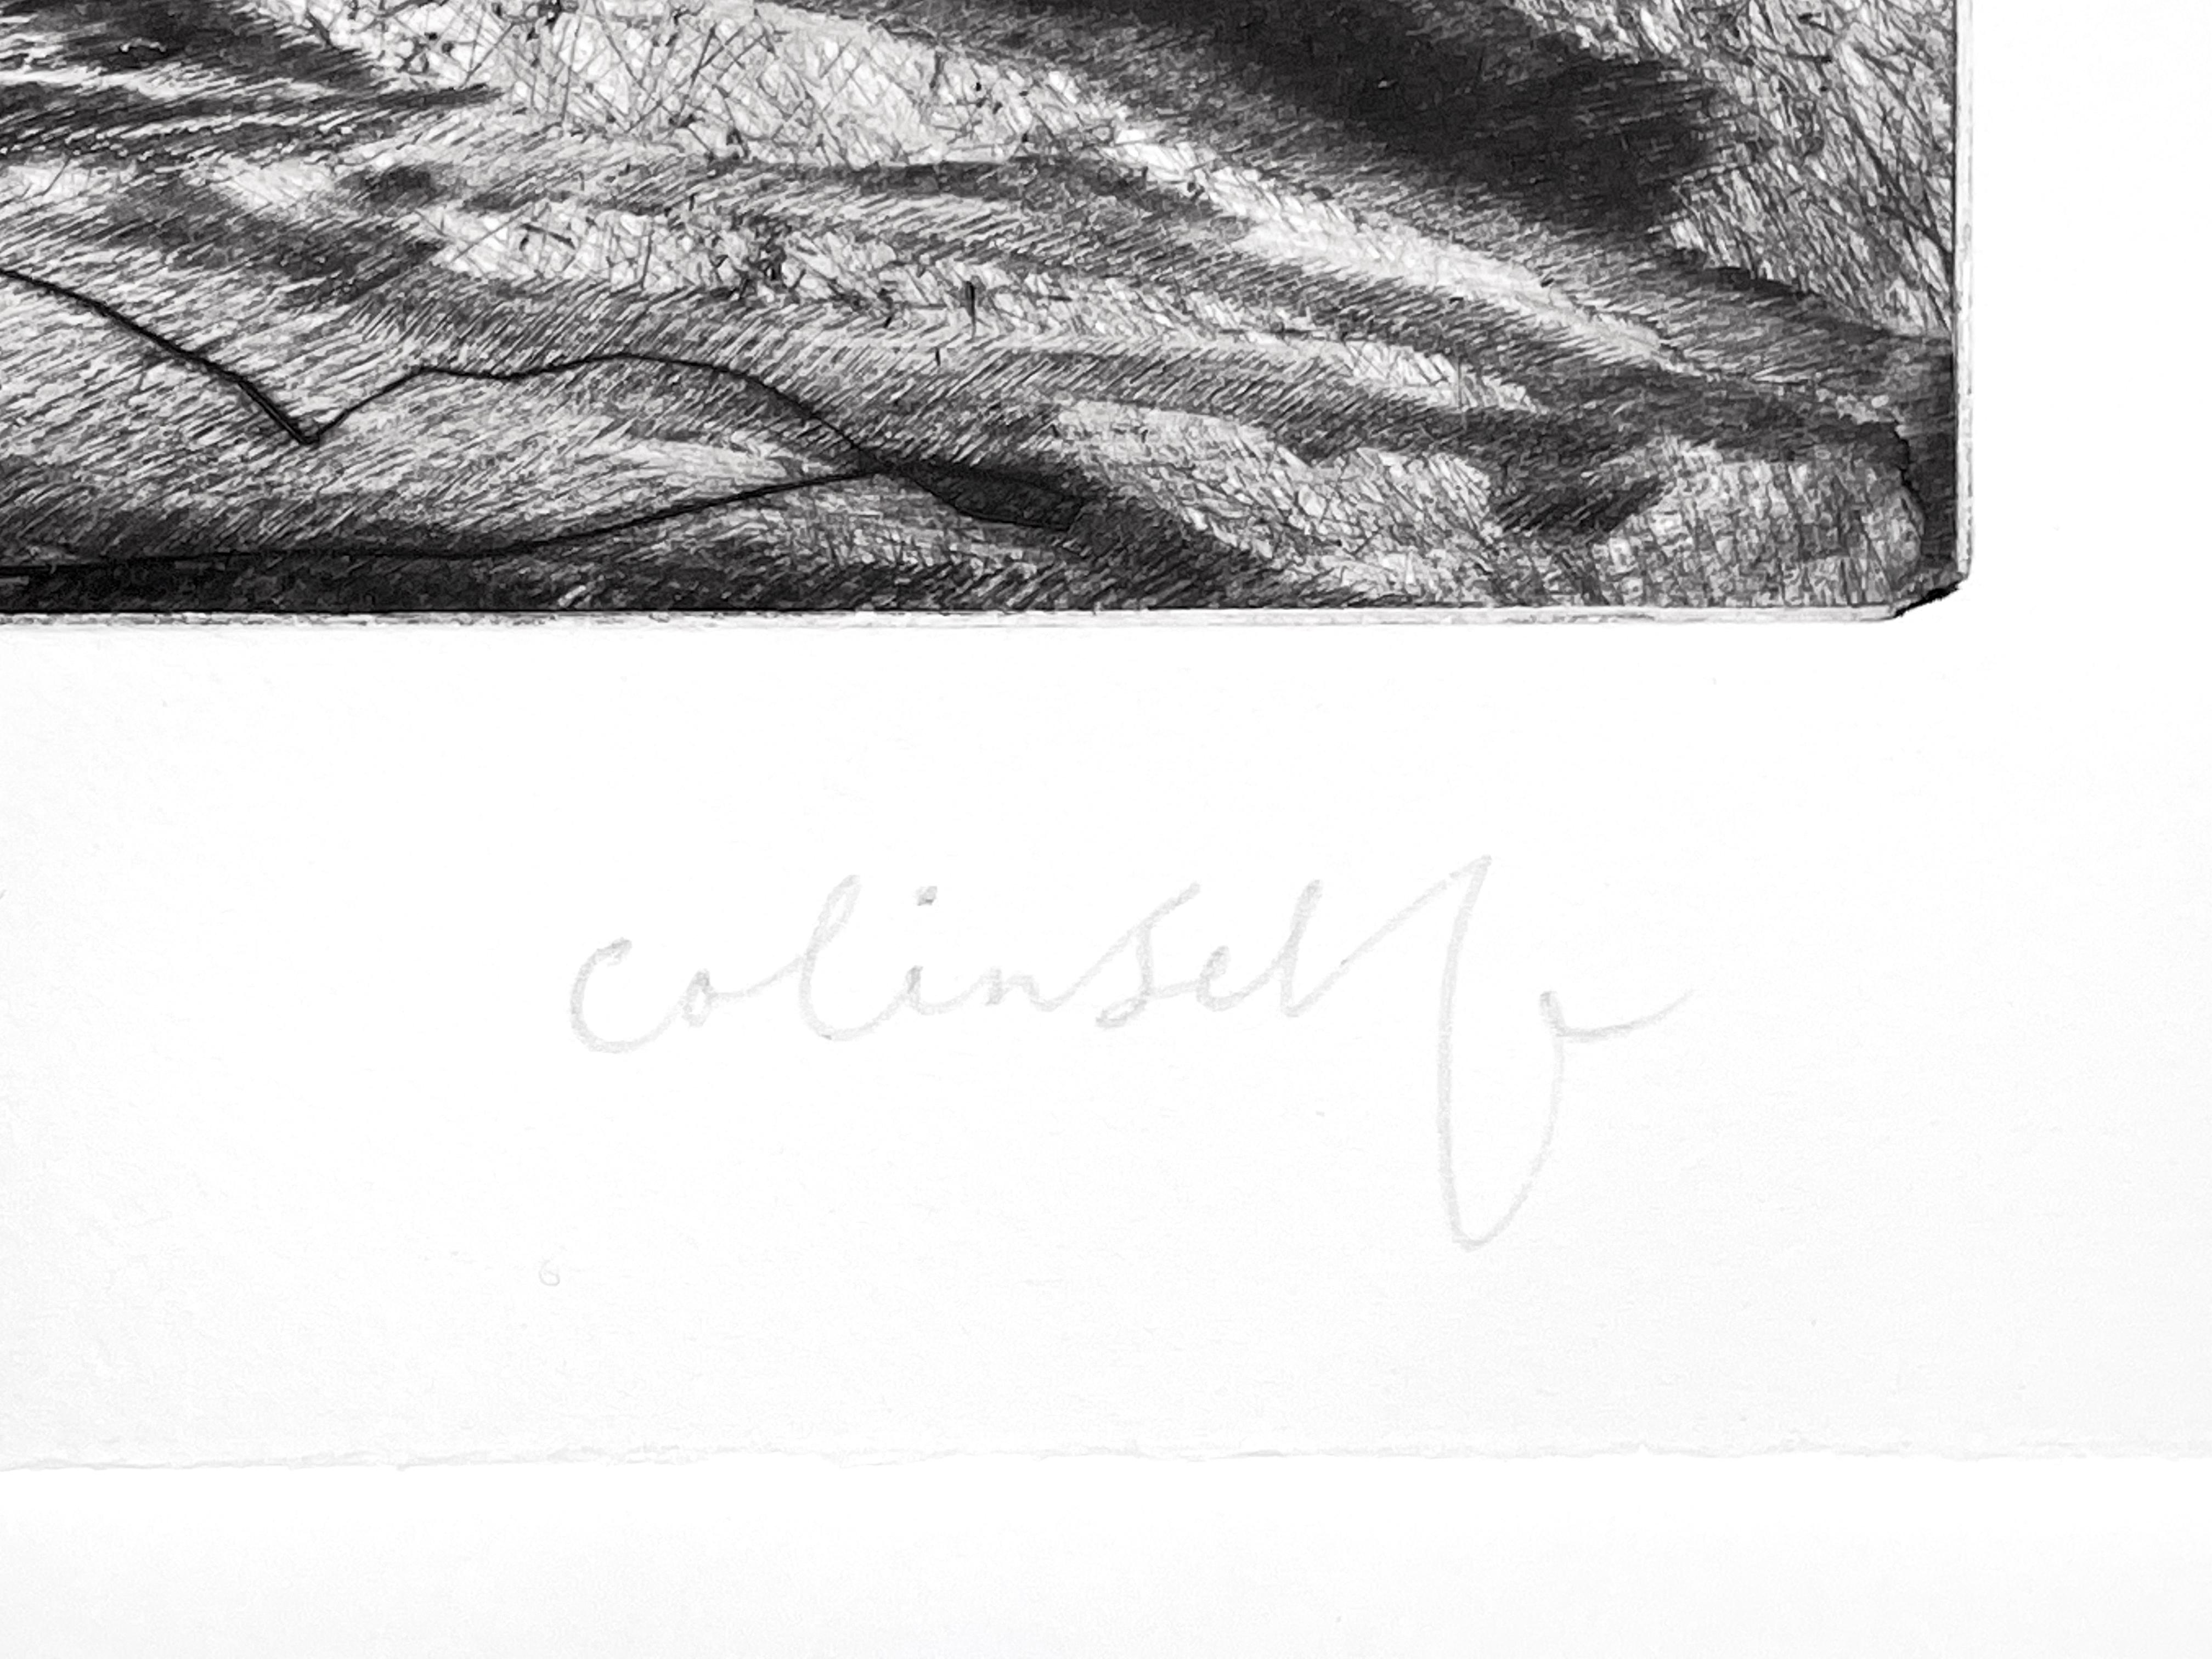  Oiseau mort pour Craigie n° 2 - Print de Colin Self